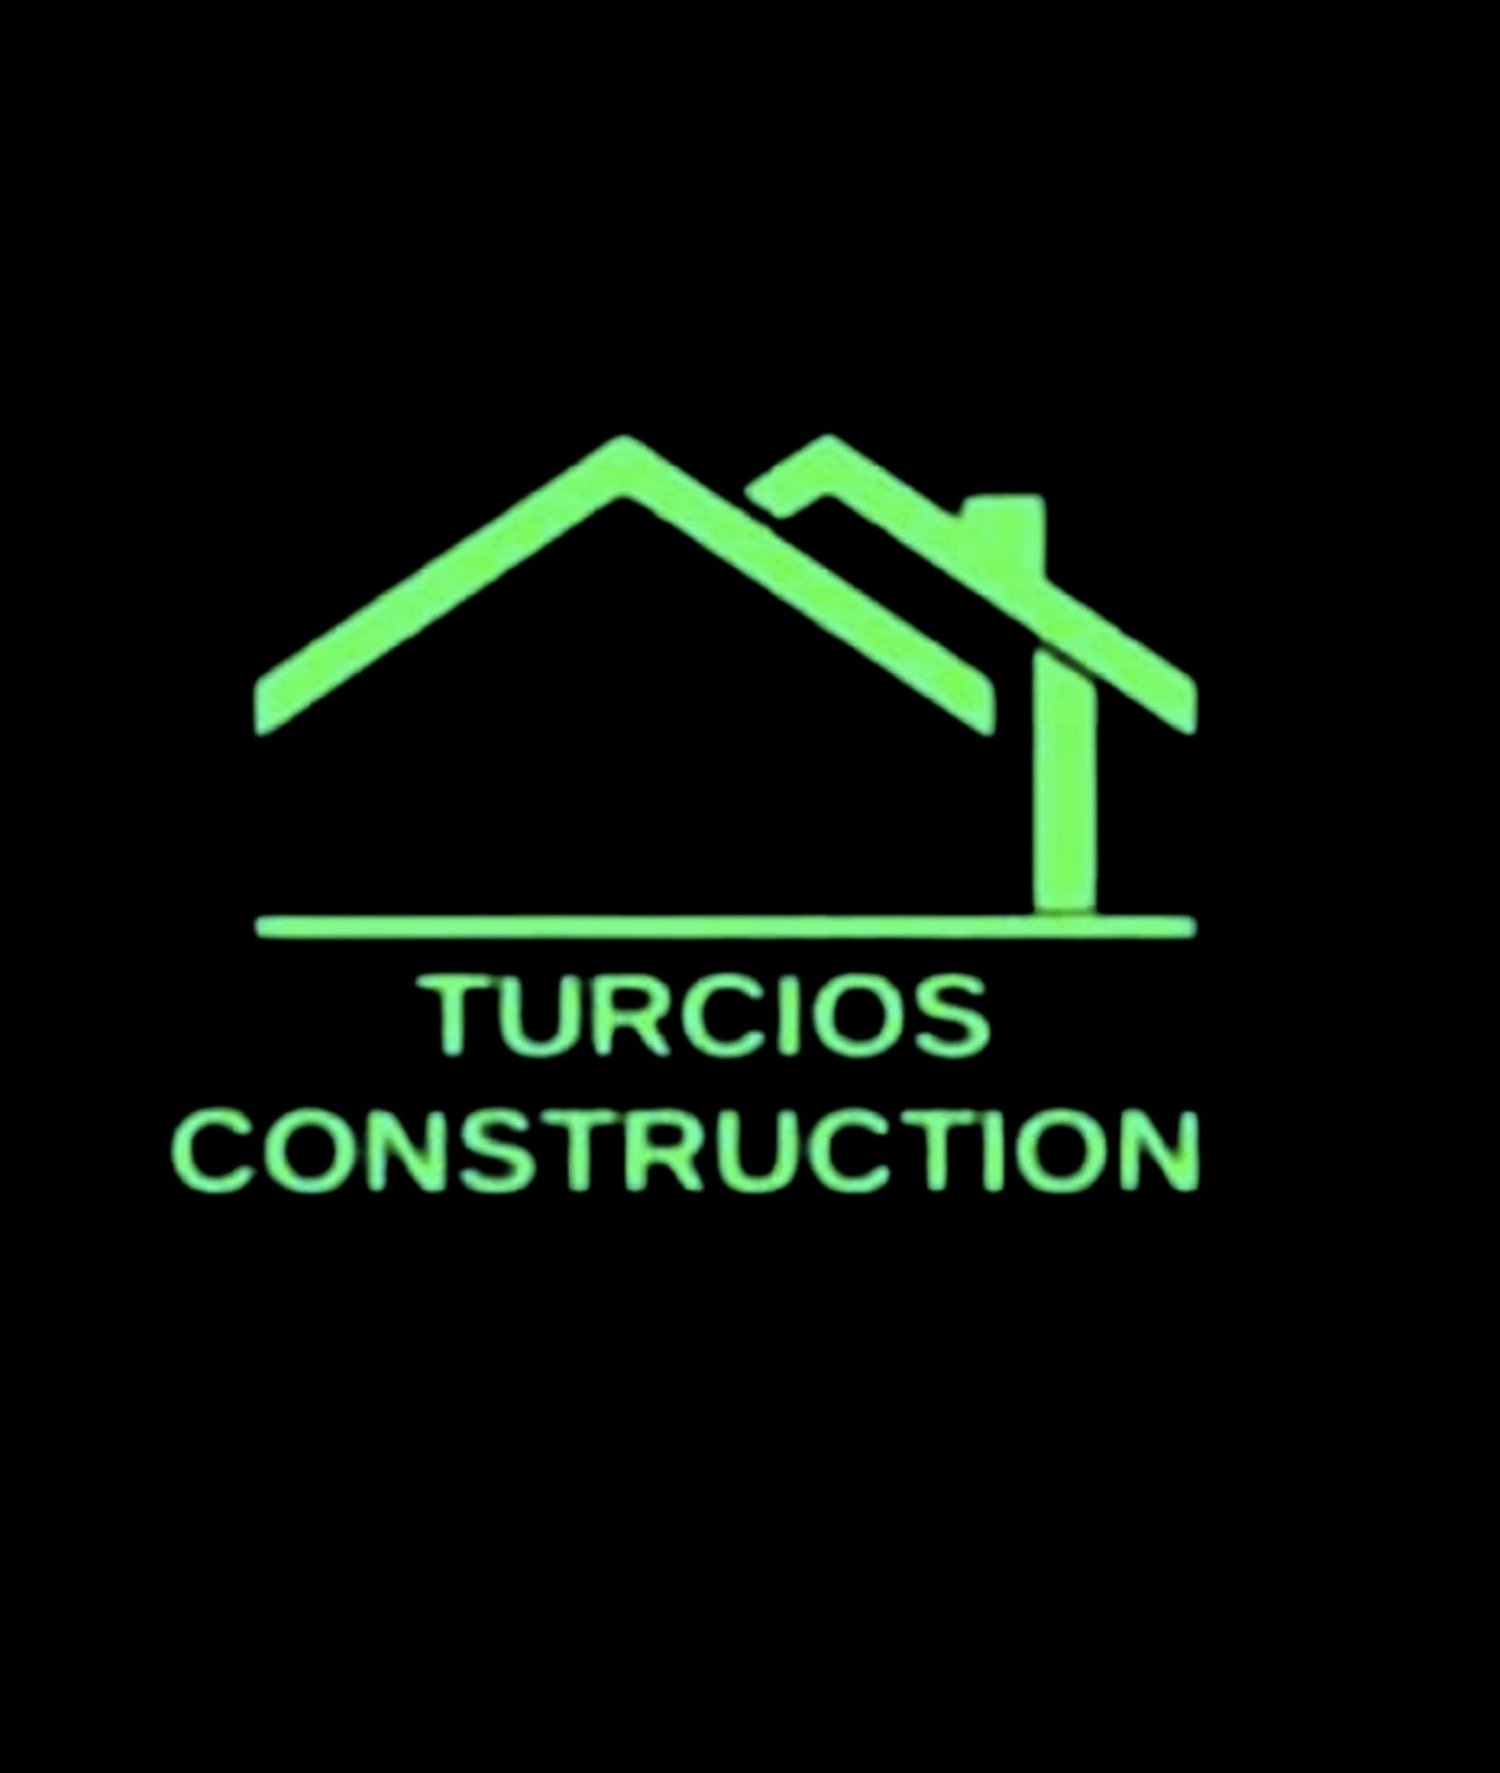 TURCIOS CONSTRUCTION